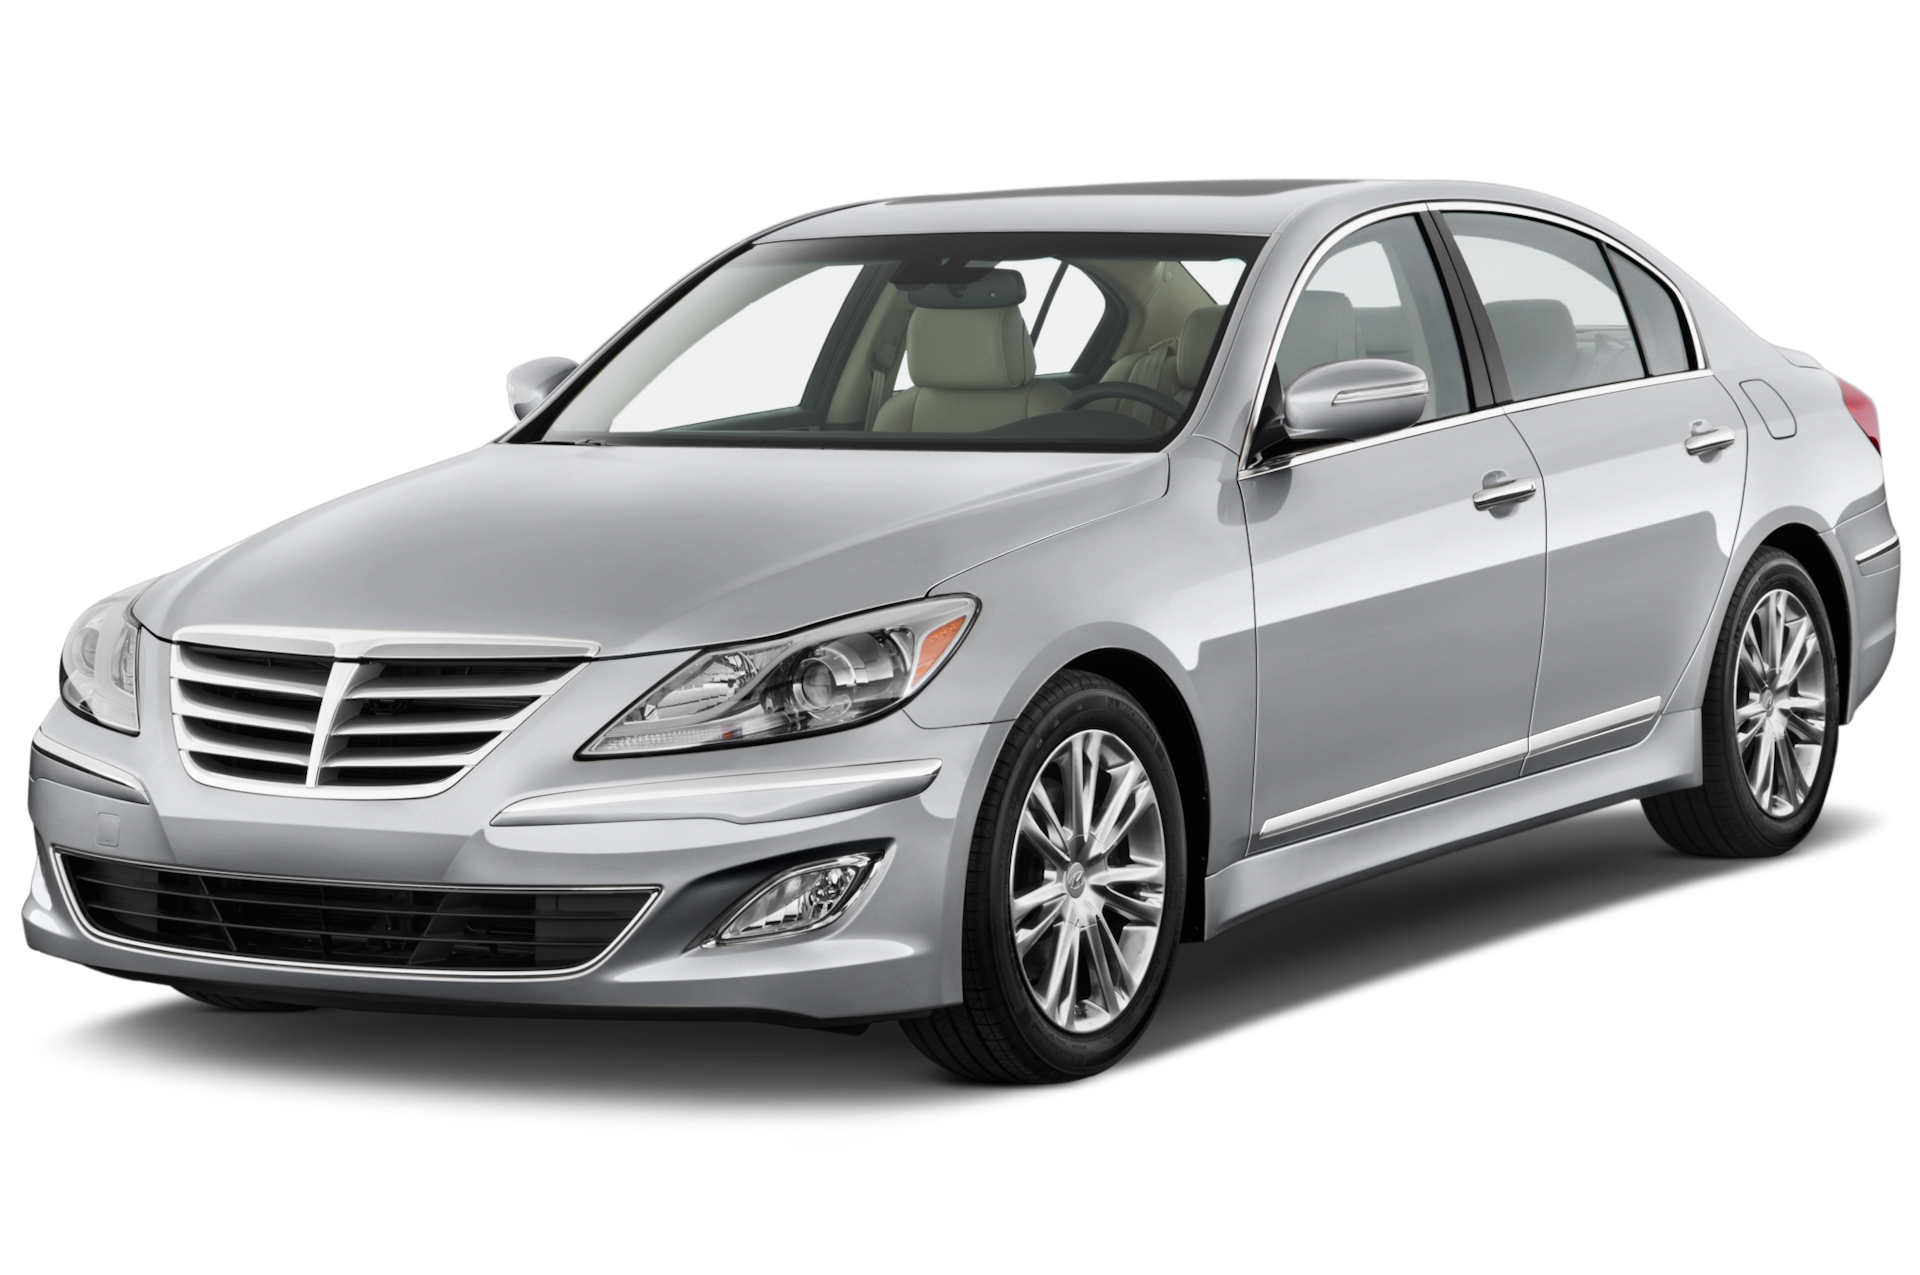 2014 Hyundai Genesis Prices, Reviews, and Photos - MotorTrend